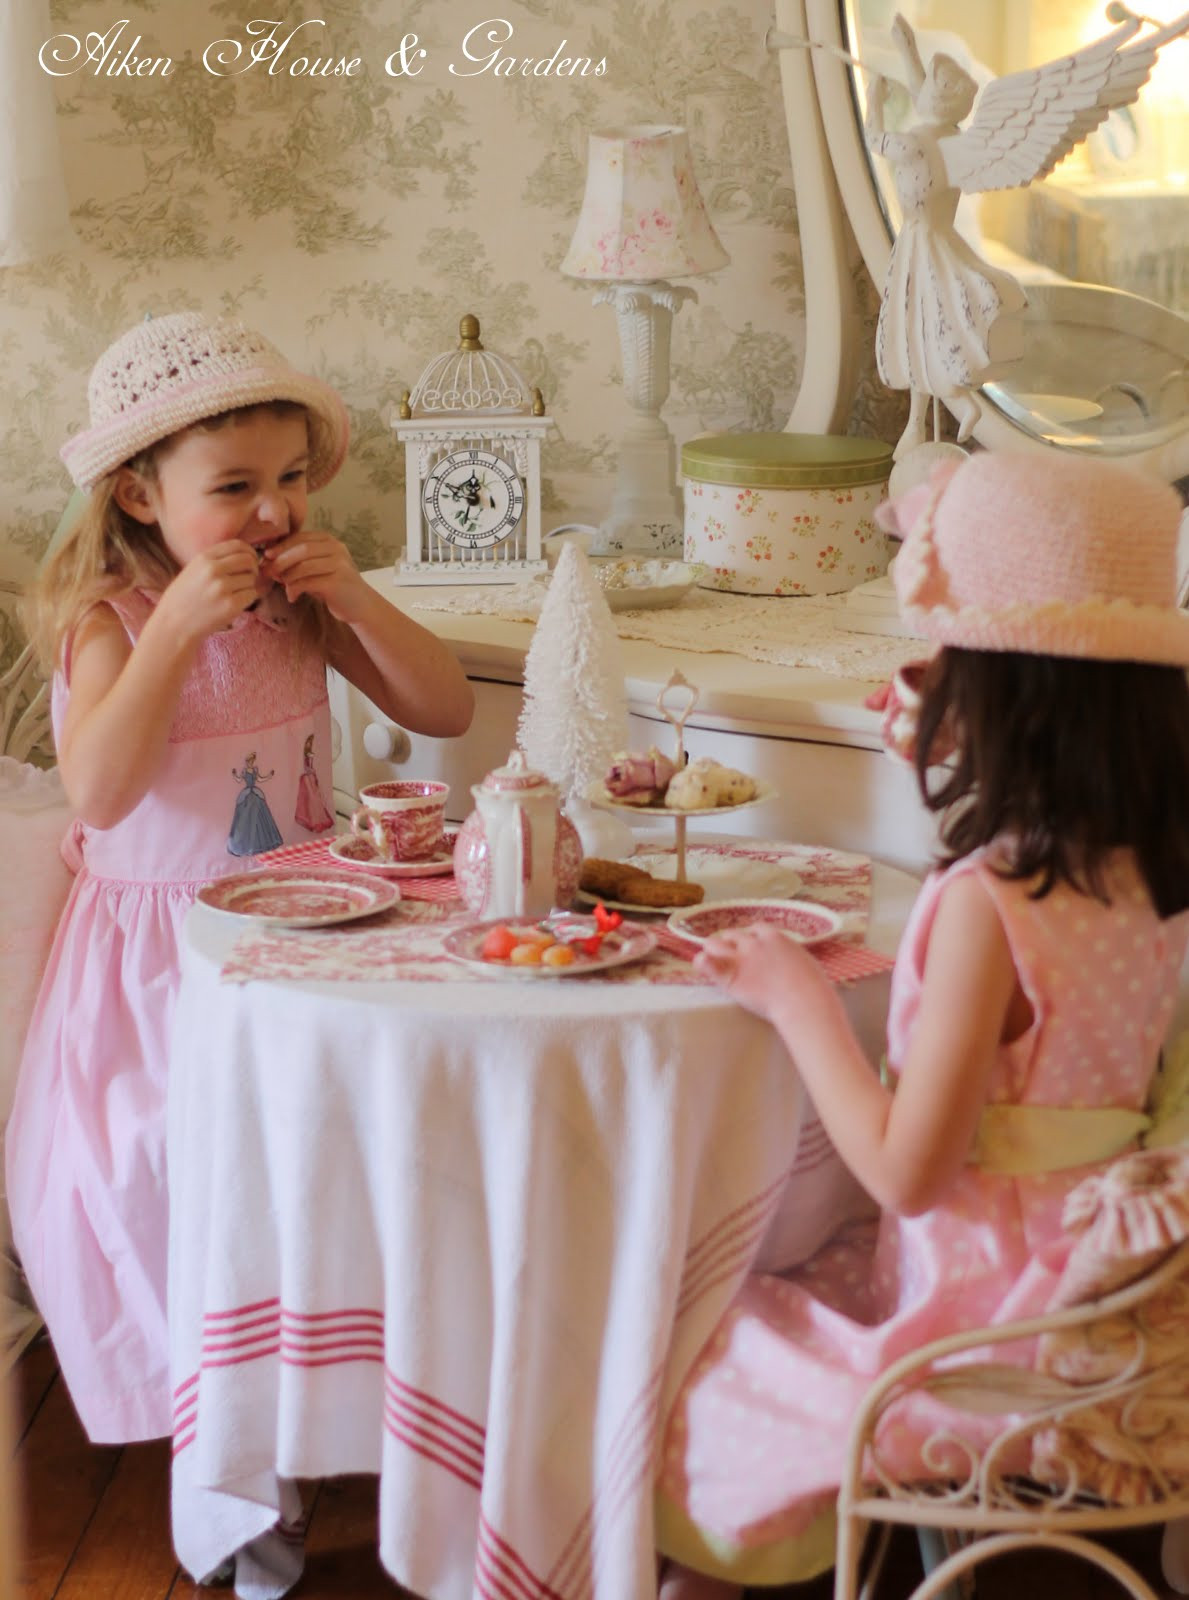 Little Girls Tea Party Ideas
 Aiken House & Gardens Little Girls Tea Party